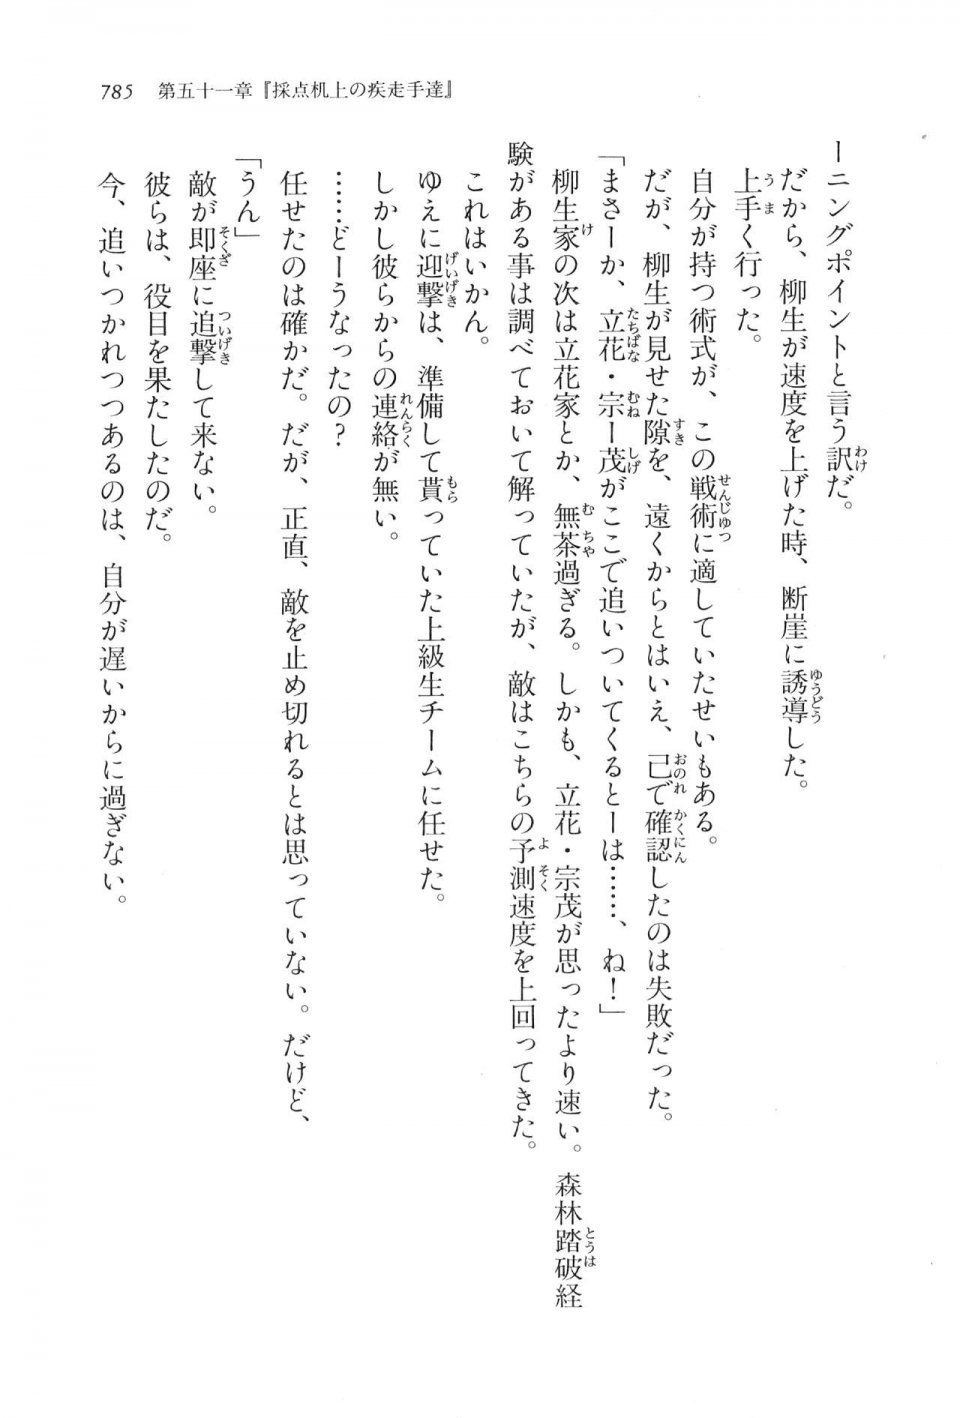 Kyoukai Senjou no Horizon LN Vol 17(7B) - Photo #787